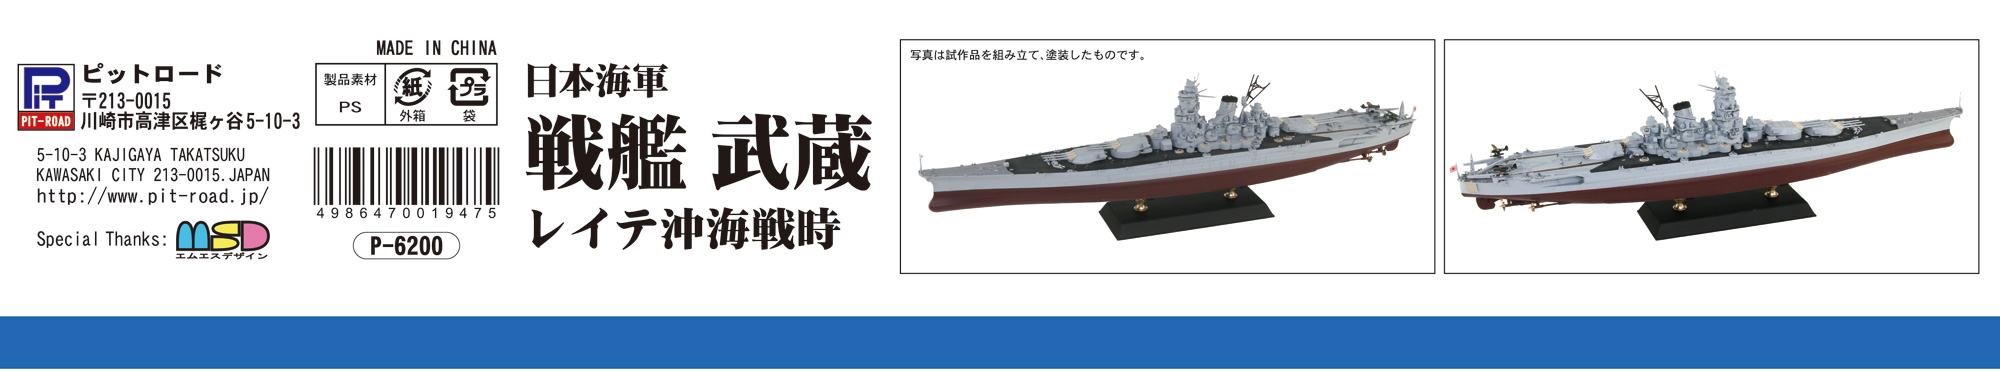 1/700 日本海軍 戦艦 武蔵 レイテ沖海戦時 - ウインドウを閉じる